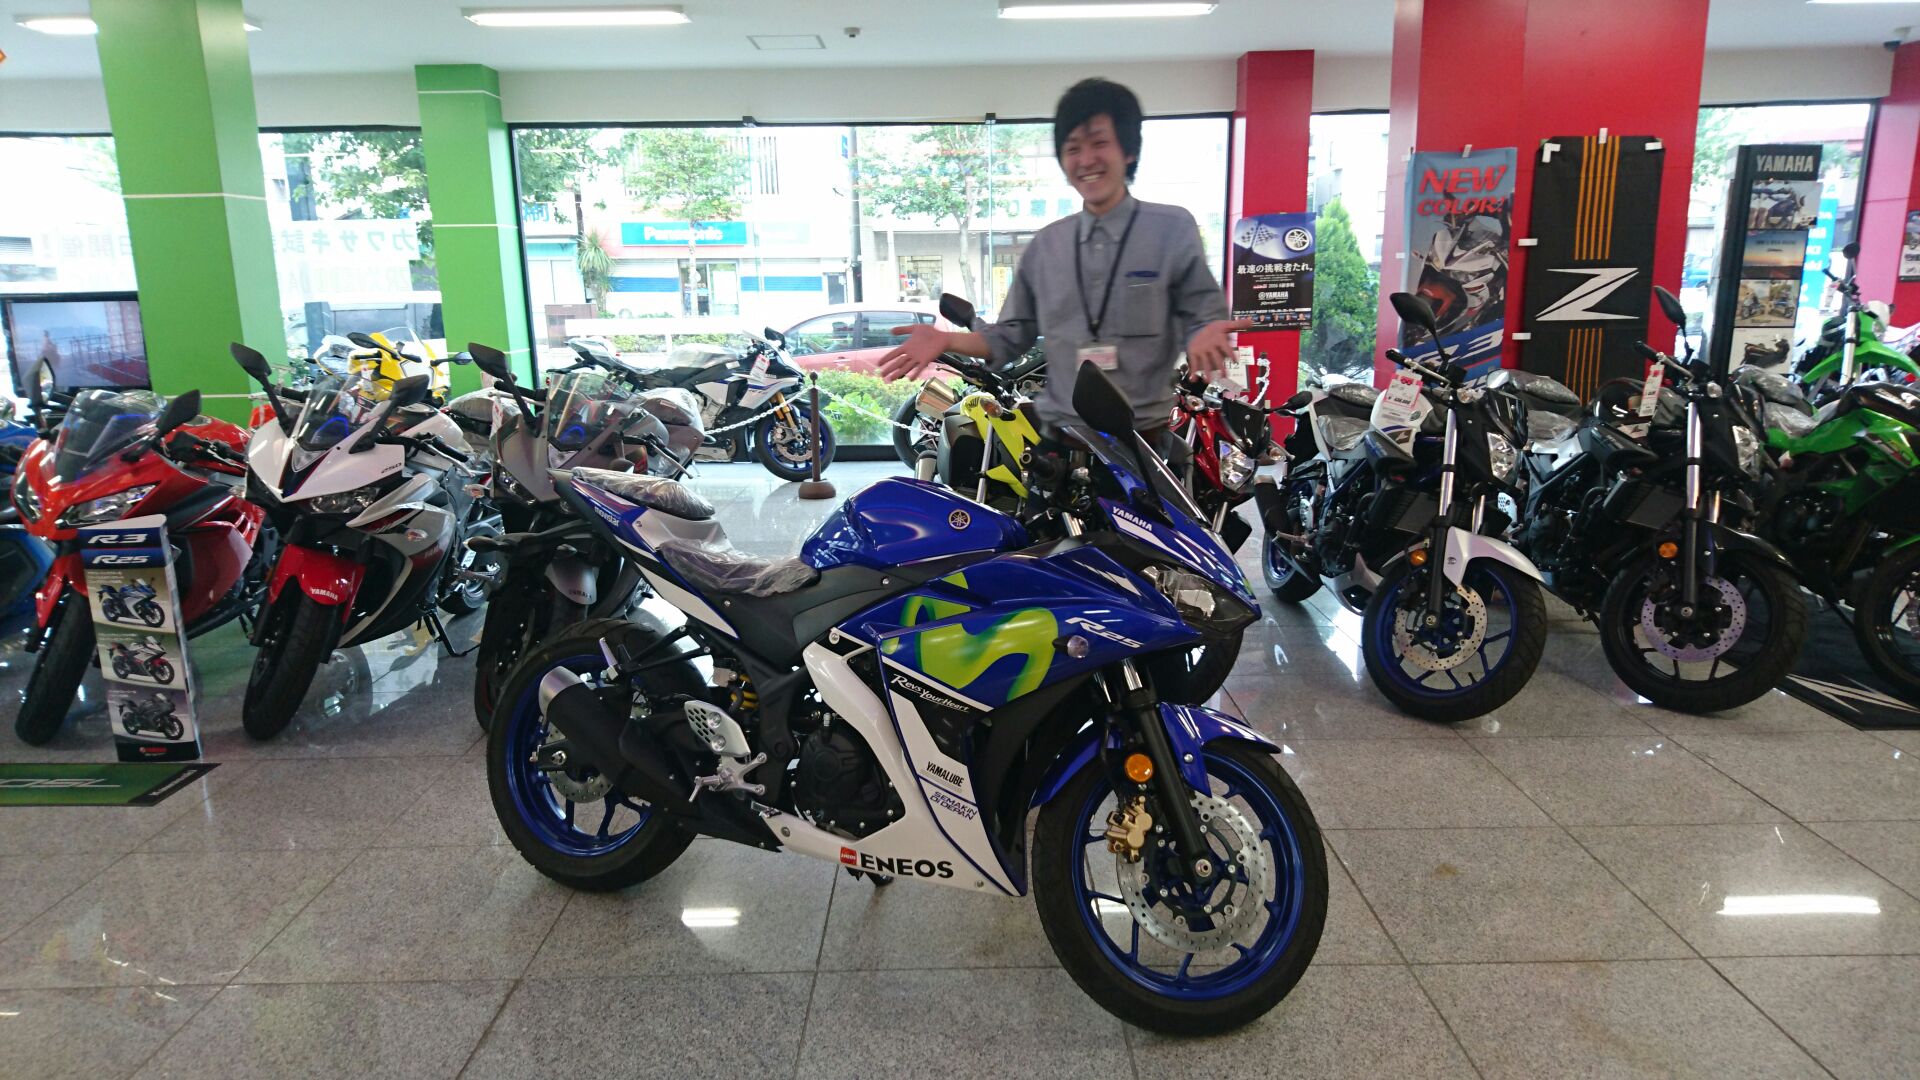 最新情報一覧 U Media ユーメディア 中古バイク 新車バイク探しの決定版 神奈川 東京でバイク探すならユーメディア